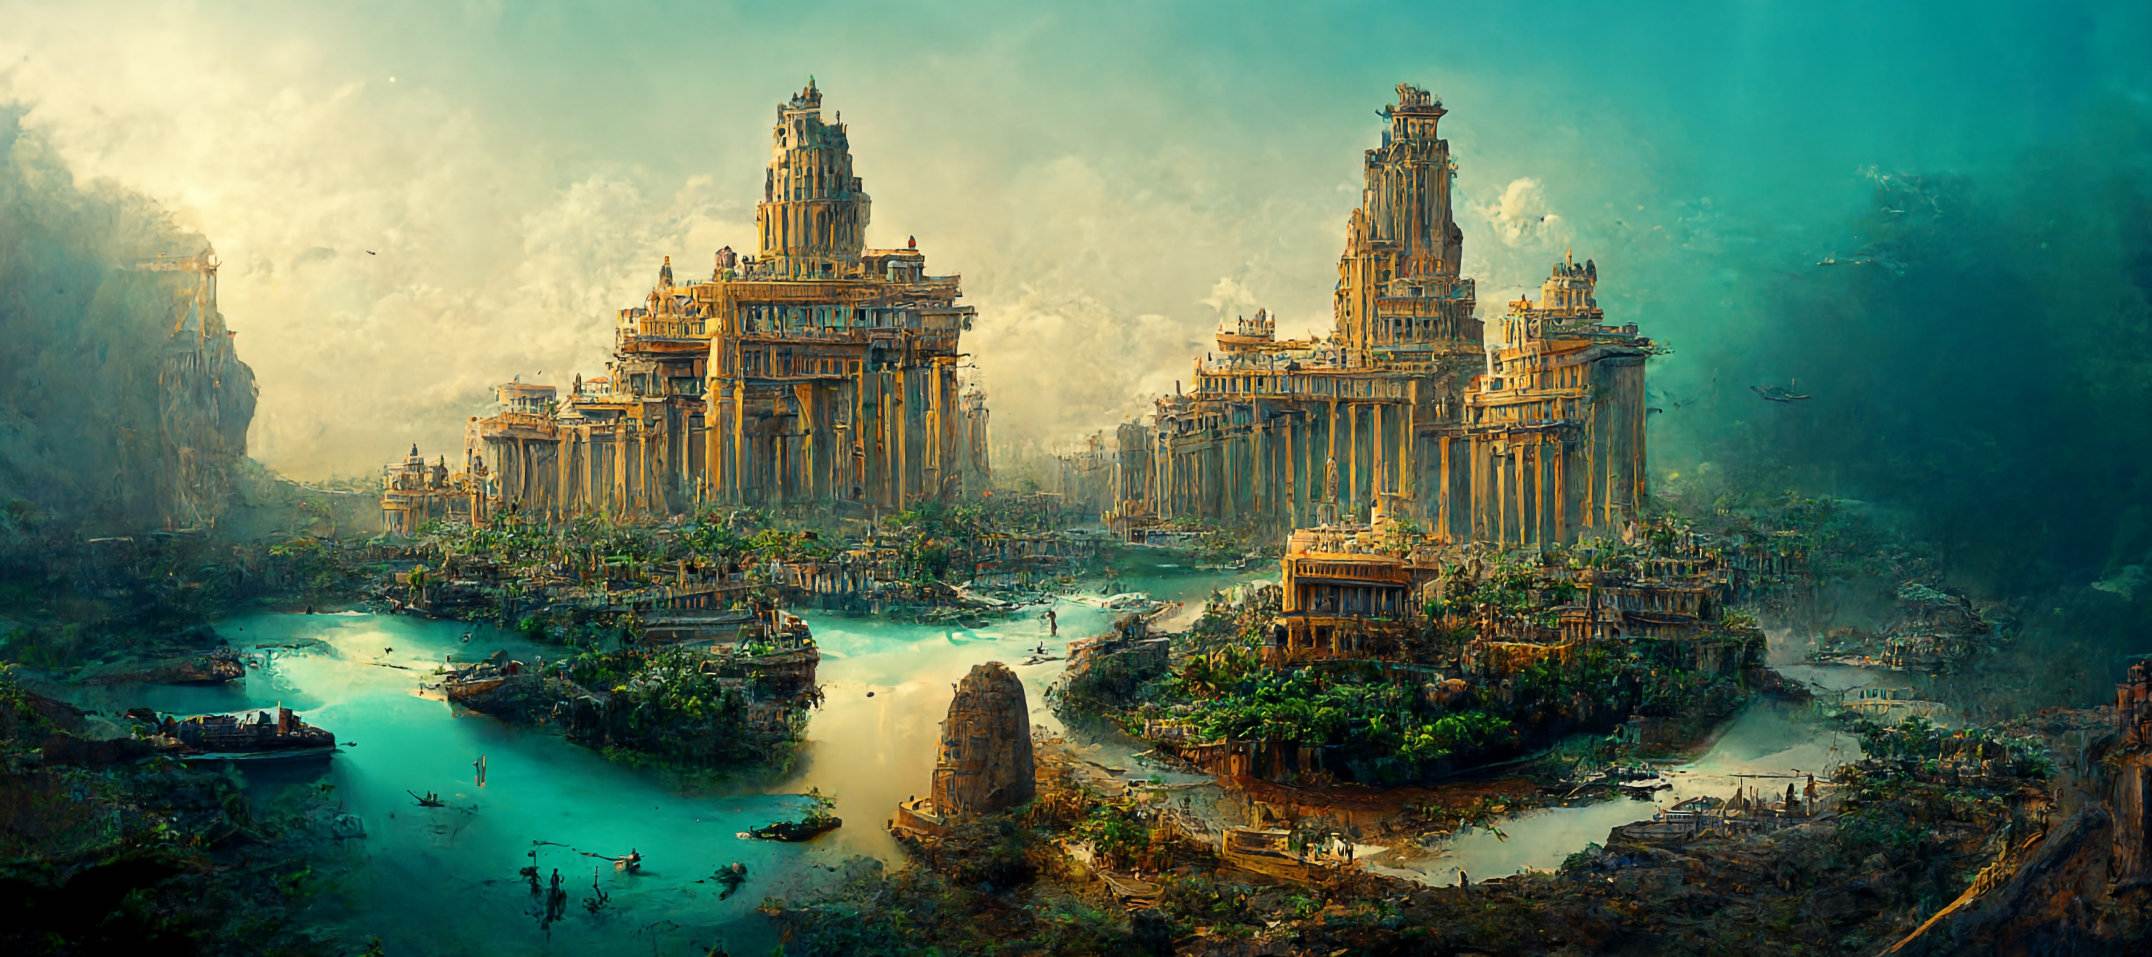 Mzinda wa Sunken wa Pavlopetri kapena Atlantis: Mzinda wazaka 5,000 wapezeka ku Greece 2